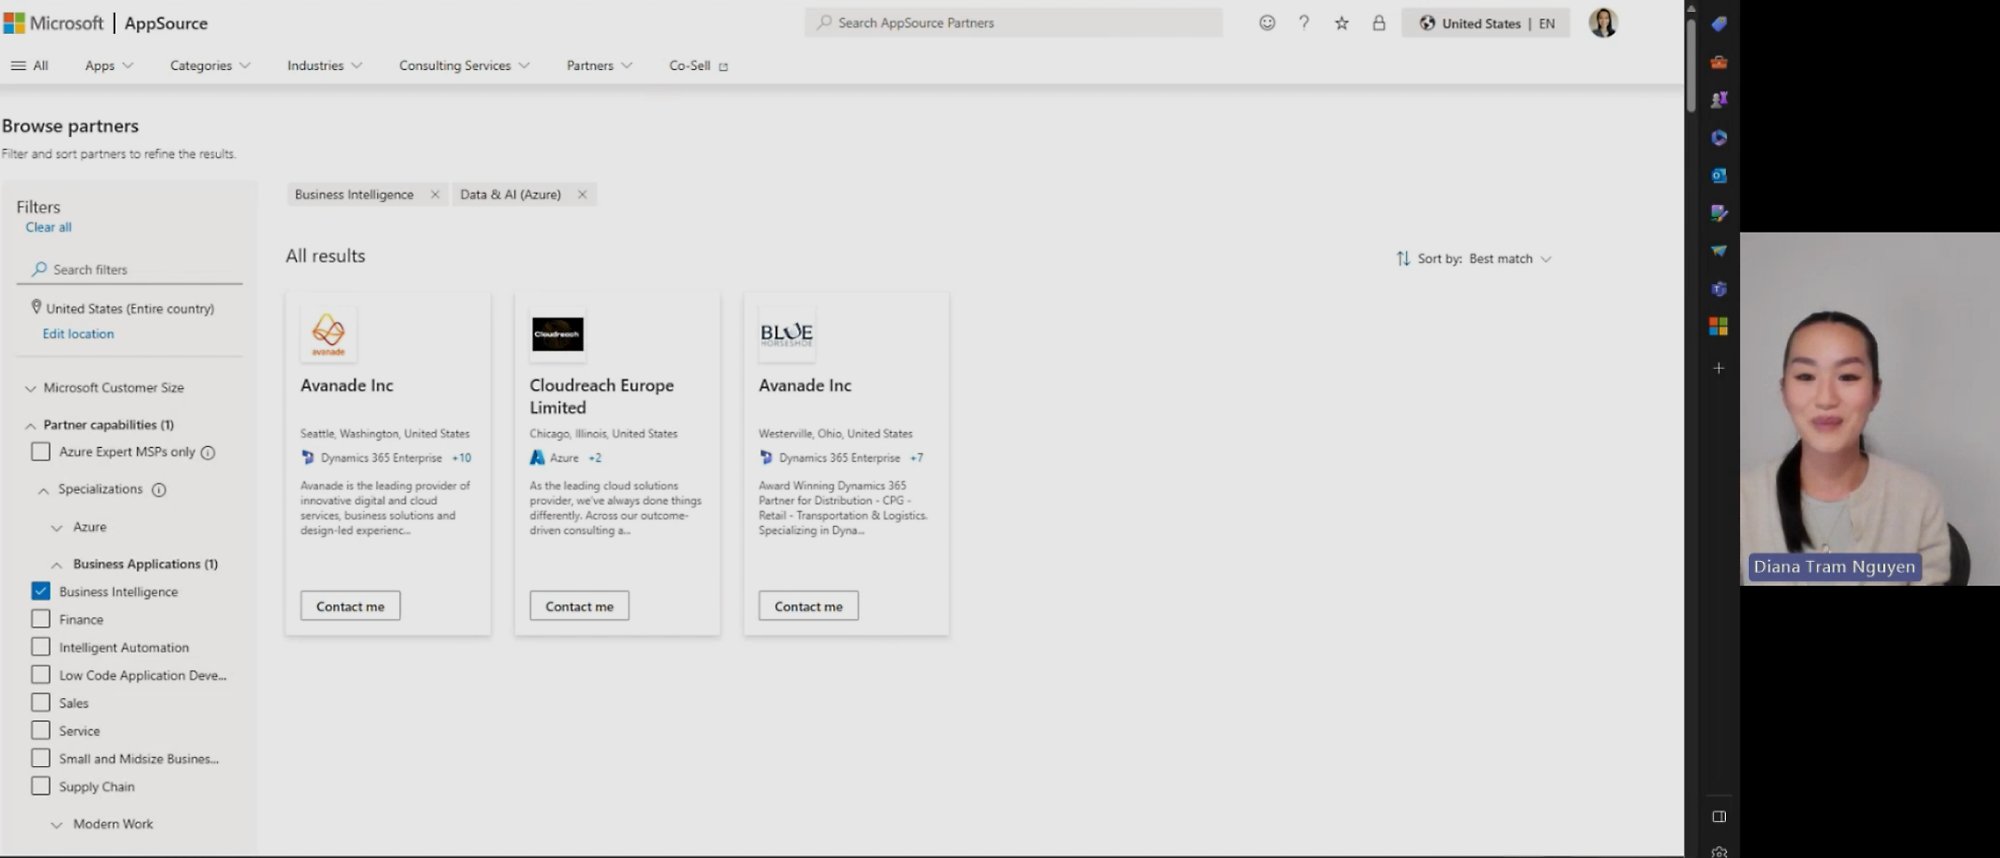 Una captura de pantalla de un vídeo en el que se muestra una página de Microsoft AppSource relacionada con la búsqueda de partners